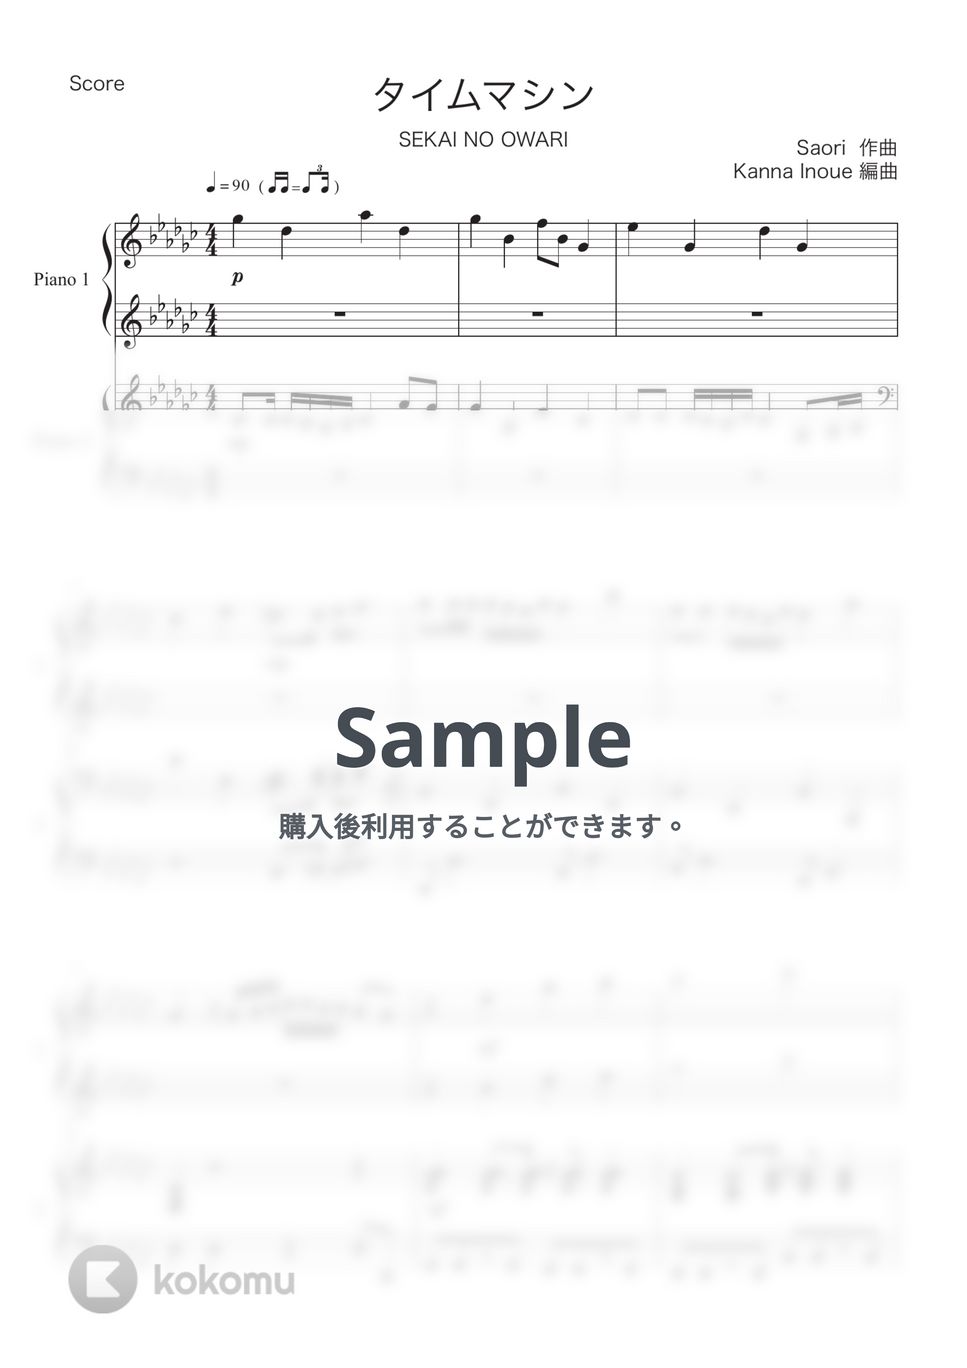 SEKAI NO OWARI - タイムマシン (ピアノ連弾 / 赤ずきん、旅の途中で死体と出会う。) by Kanna Inoue